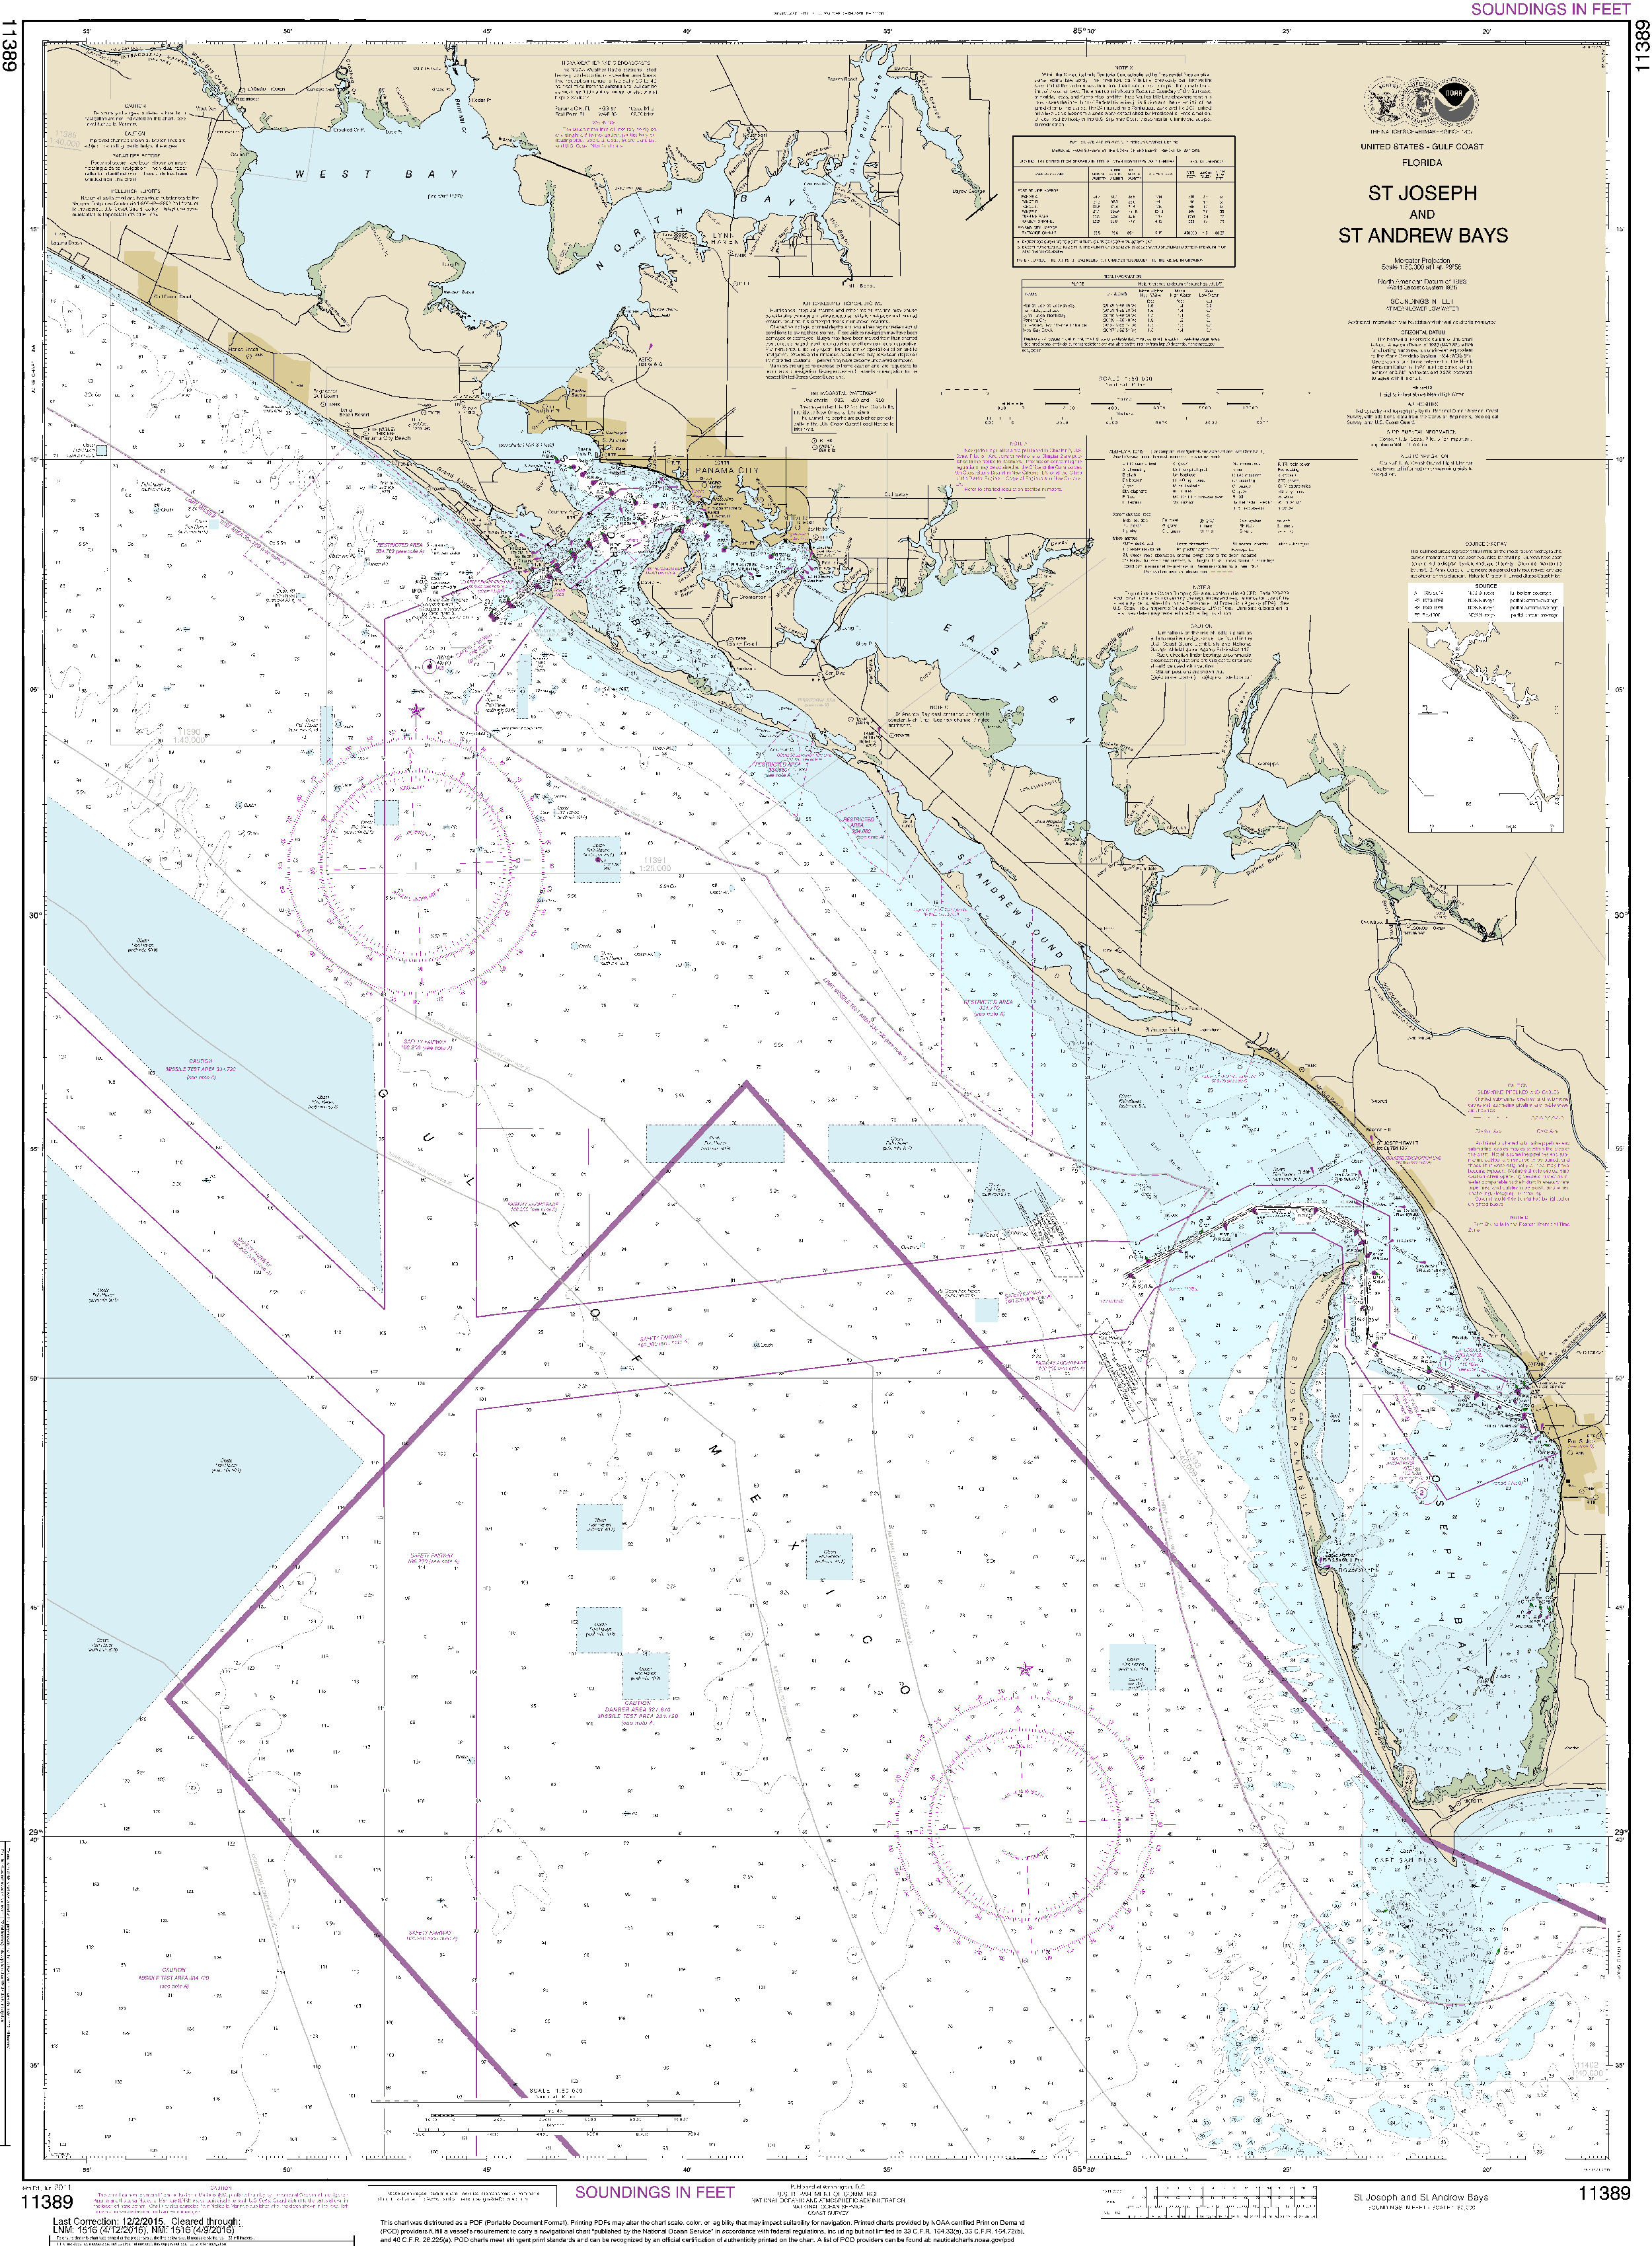 NOAA Nautical Chart 11389: St Joseph and St Andrew Bays